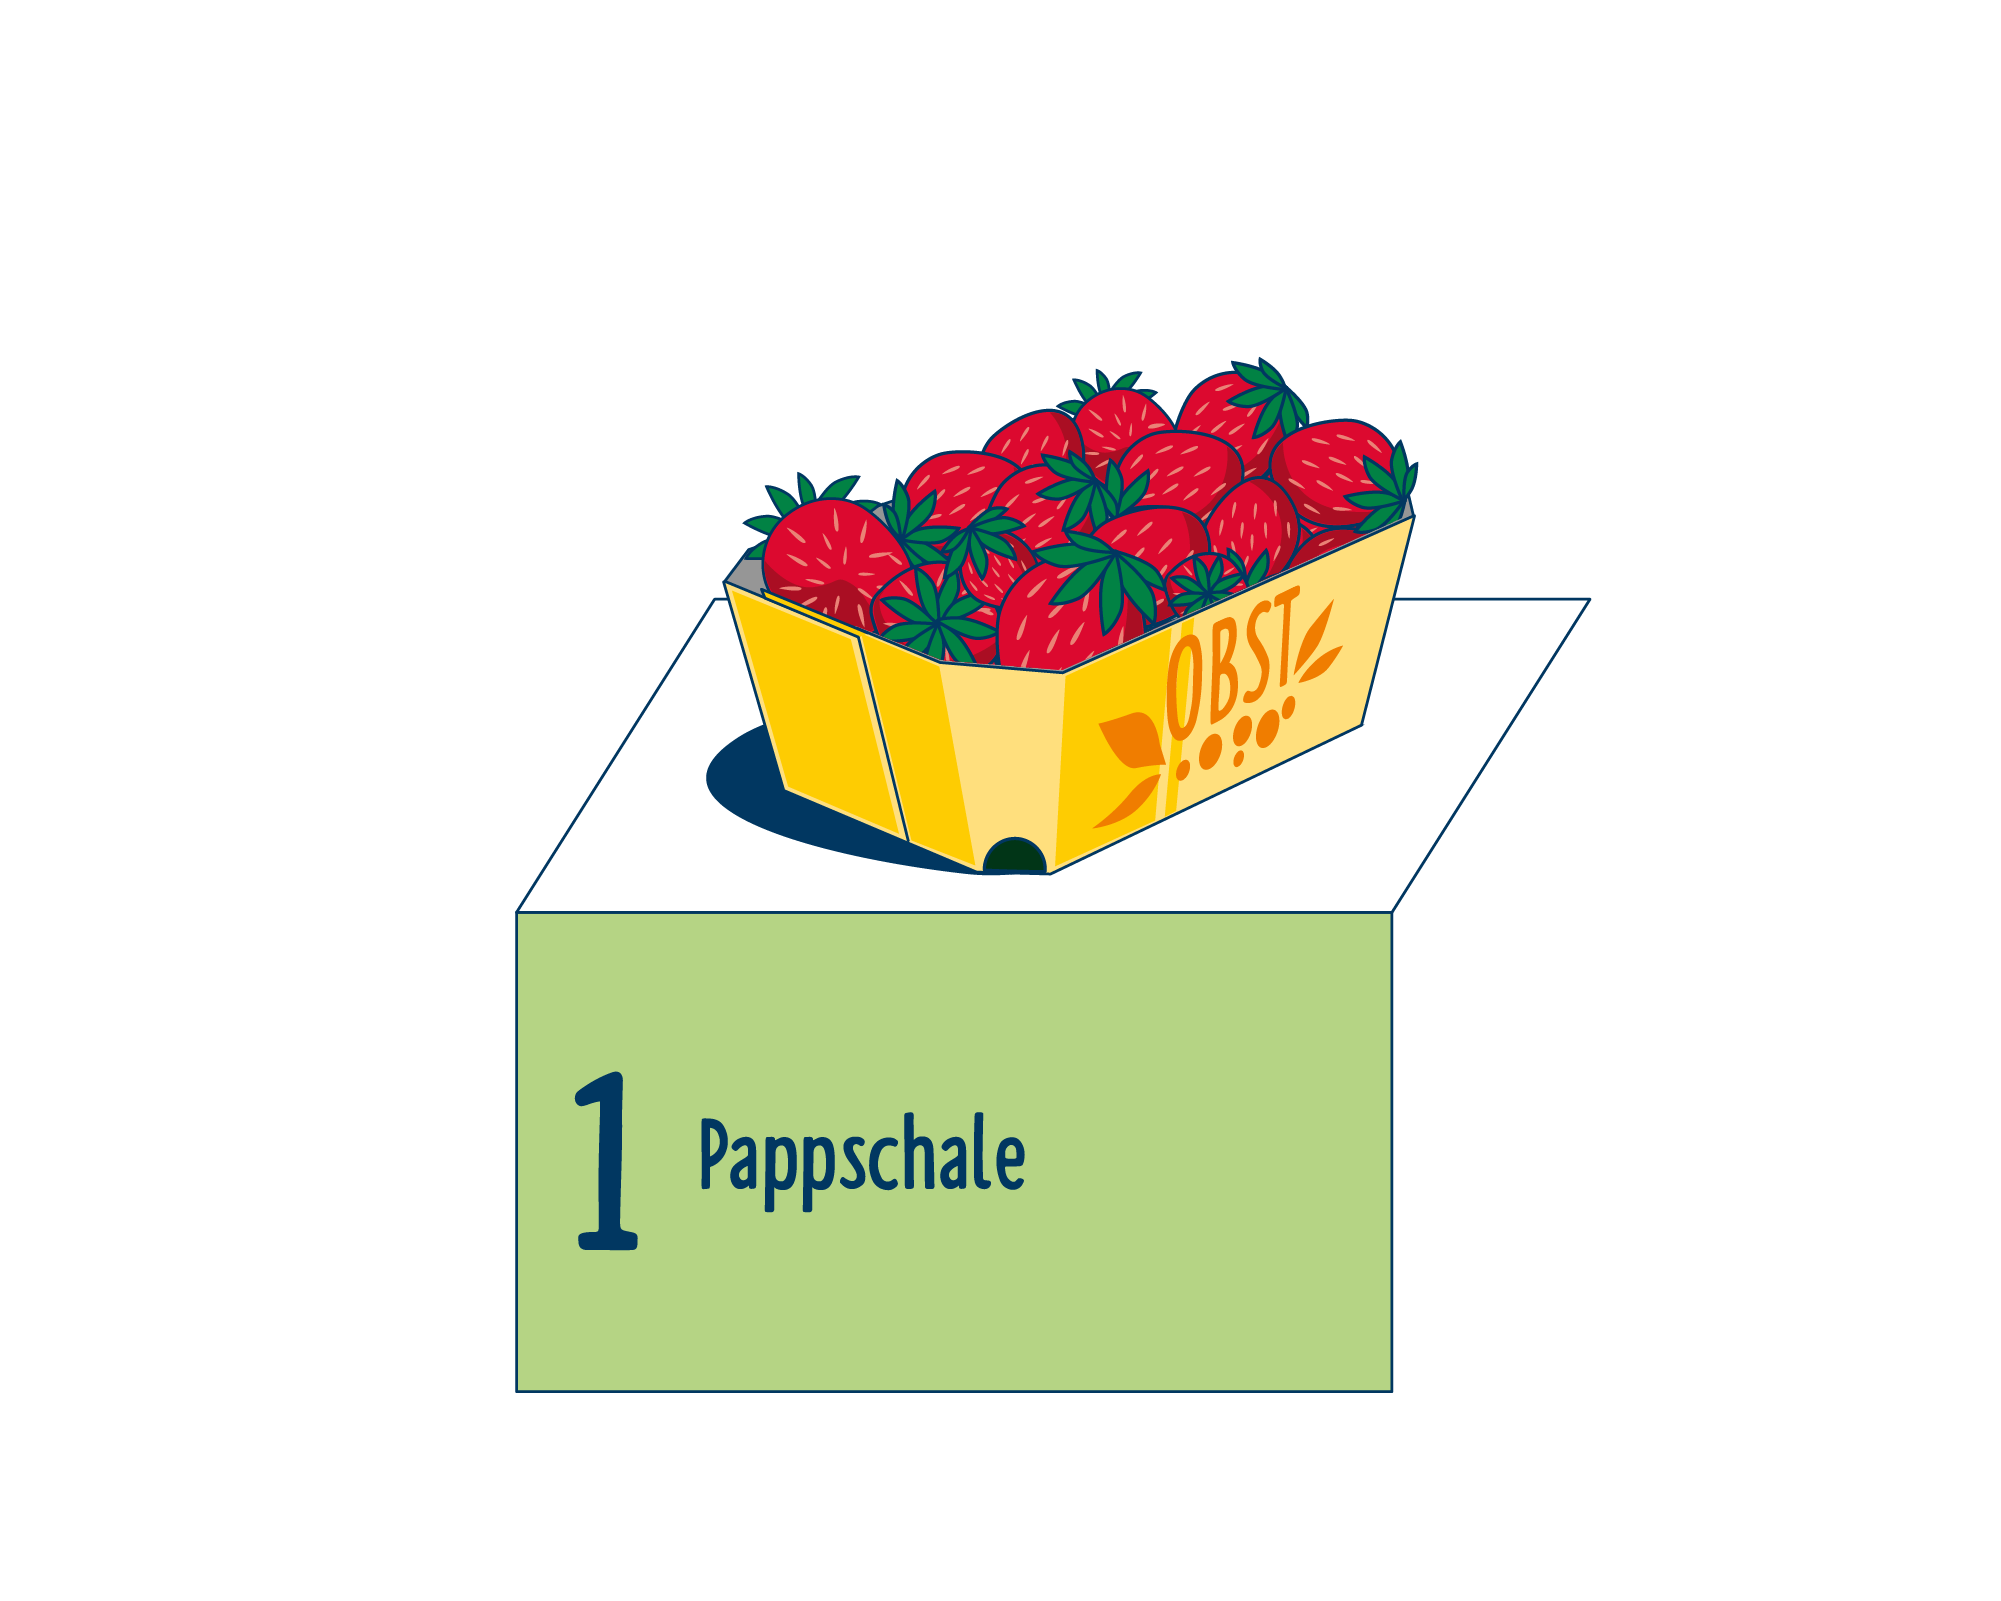 Bild Produktverpackung von Obst & Gemüse: Schalen eingeordnet auf Platz 1, bestehend aus Pappschale.